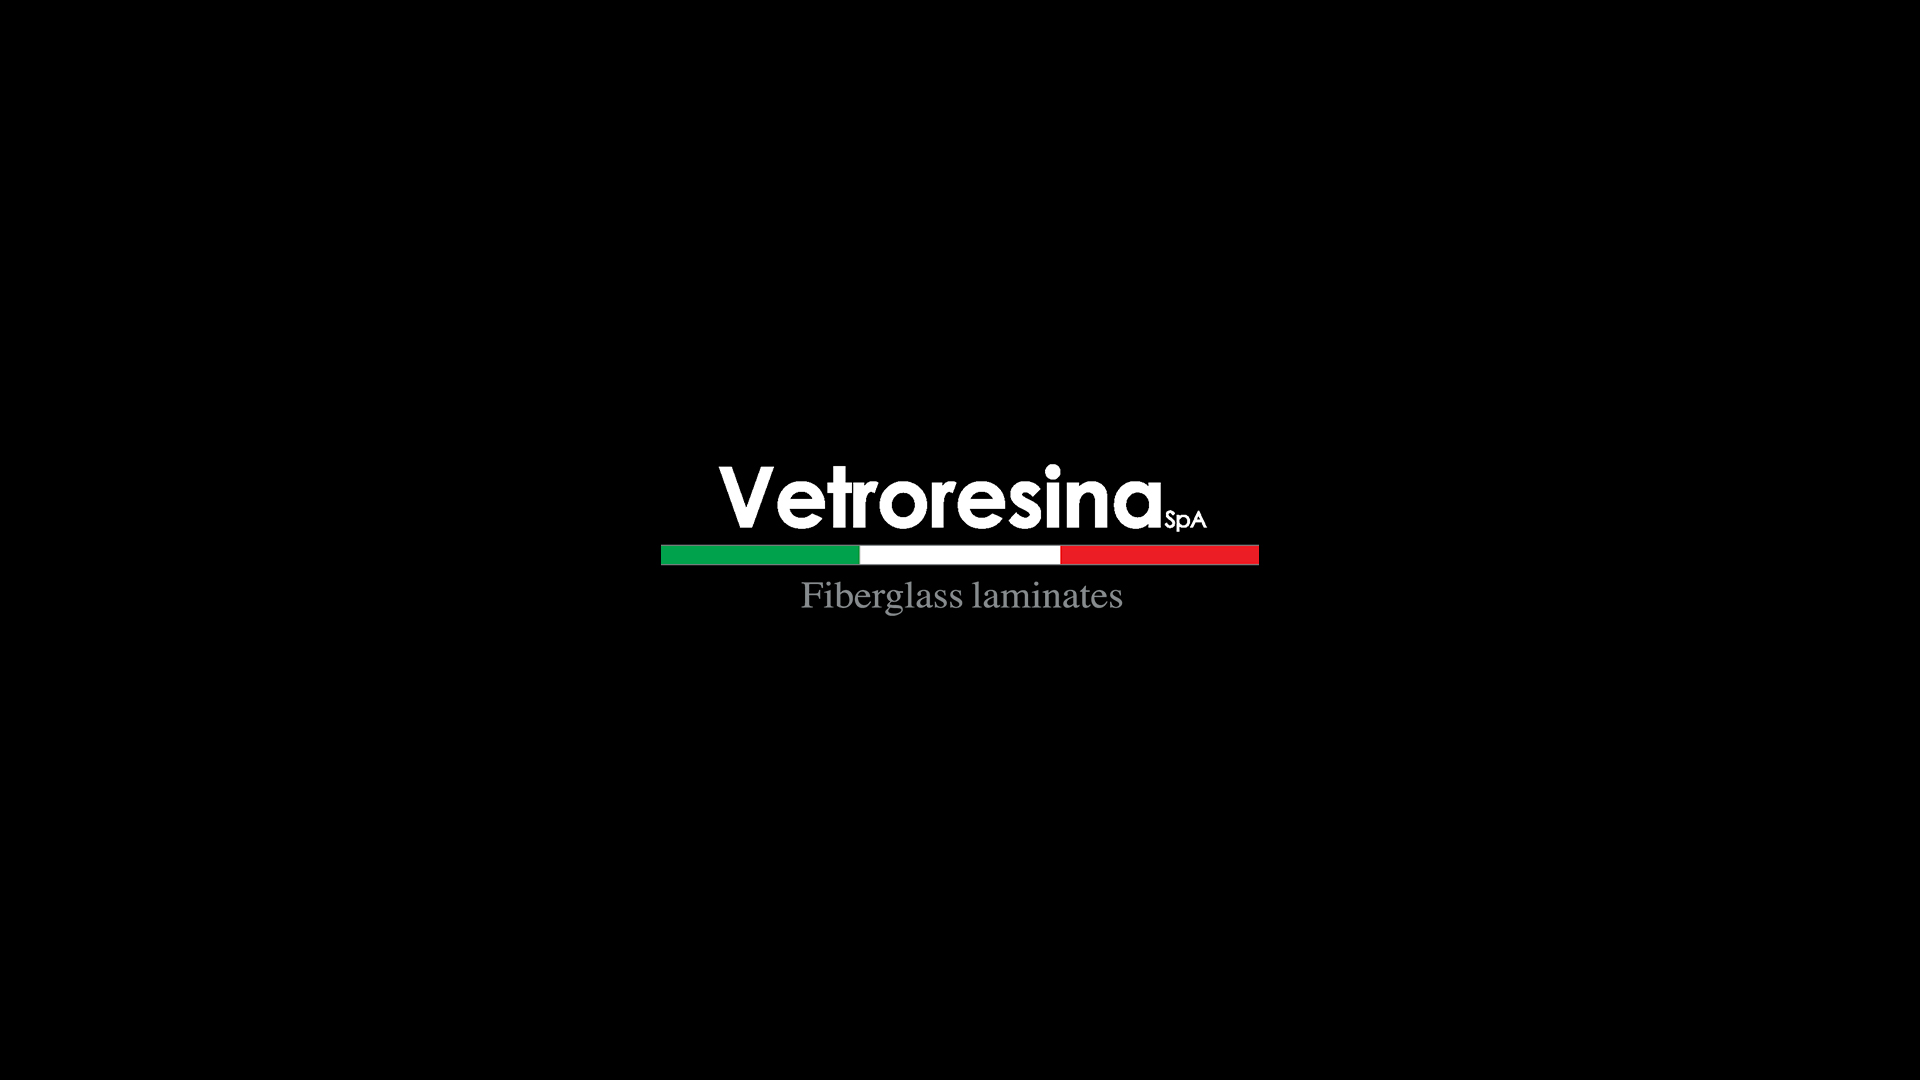 www.vetroresina.com